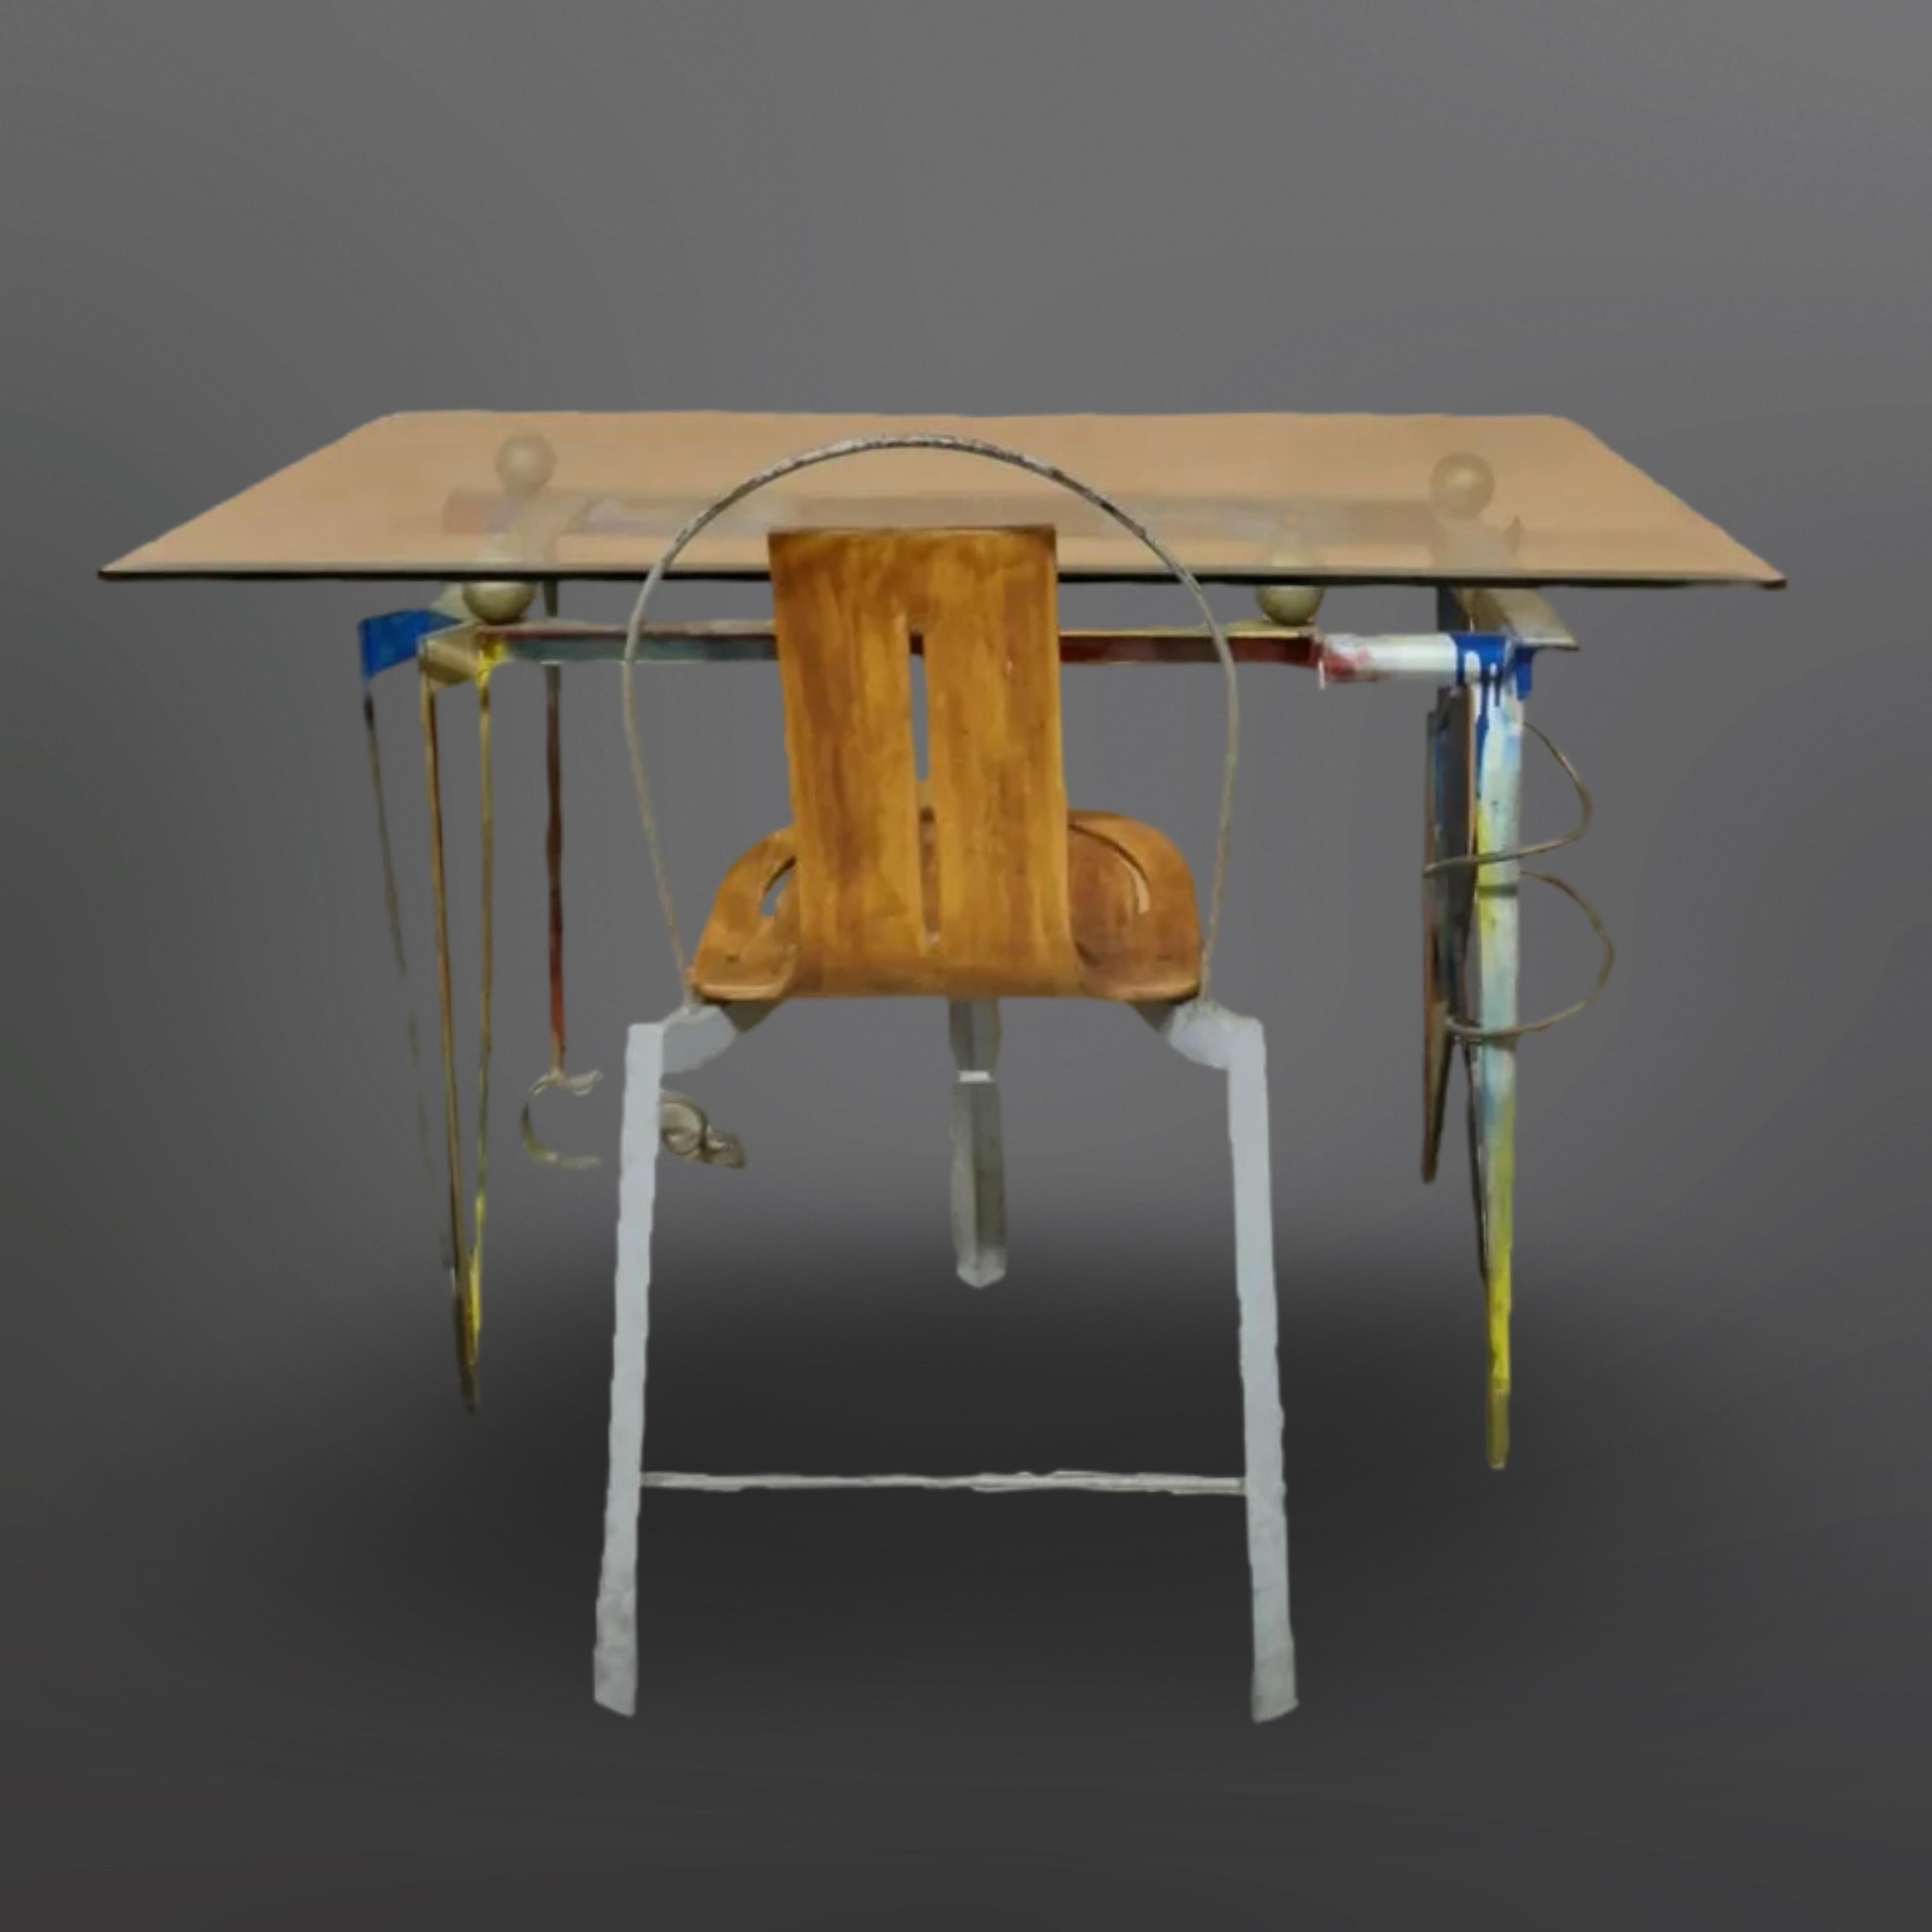 Einzigartiges künstlerisches Schreibpult und Stuhl. Der Rahmen ist aus Stahl und Schmiedeeisen in verschiedenen Formen und Größen gefertigt. Bemalt in mehreren verschiedenen Farben. Die Glasplatte ruht auf 4 Holzkugeln. Das Gestell des Stuhls